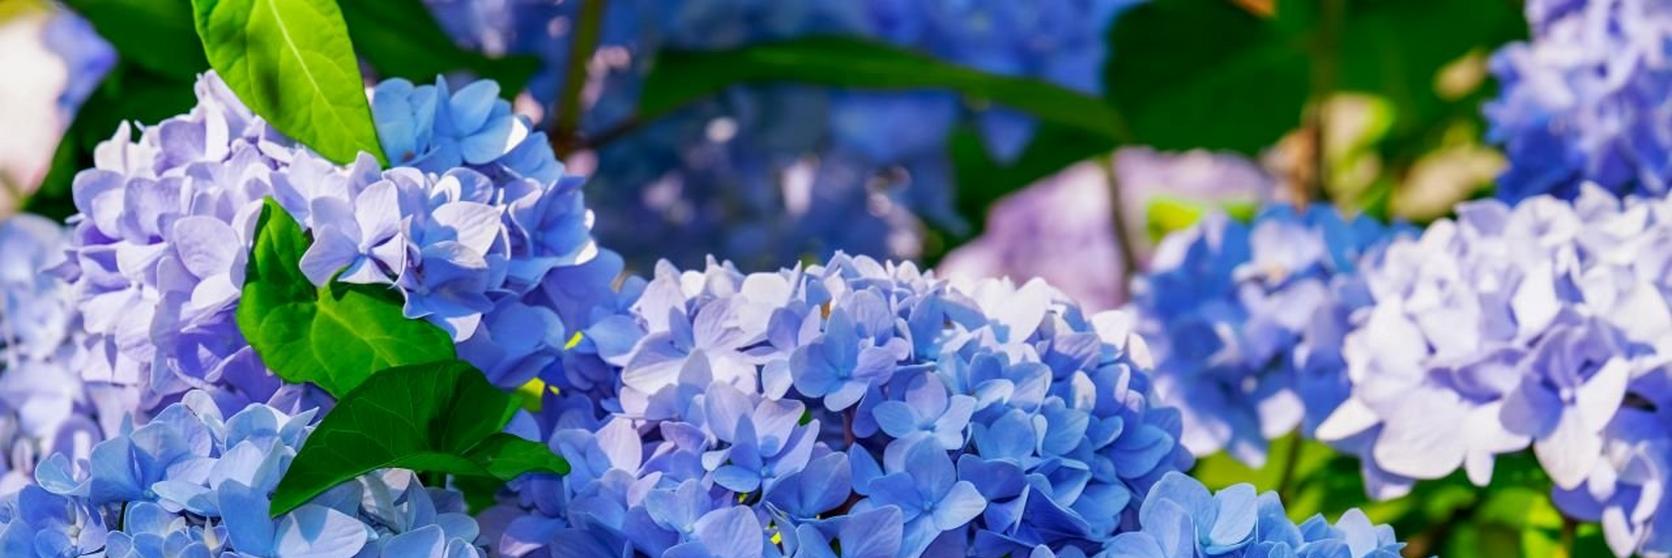 hydrangea-blue-flowers